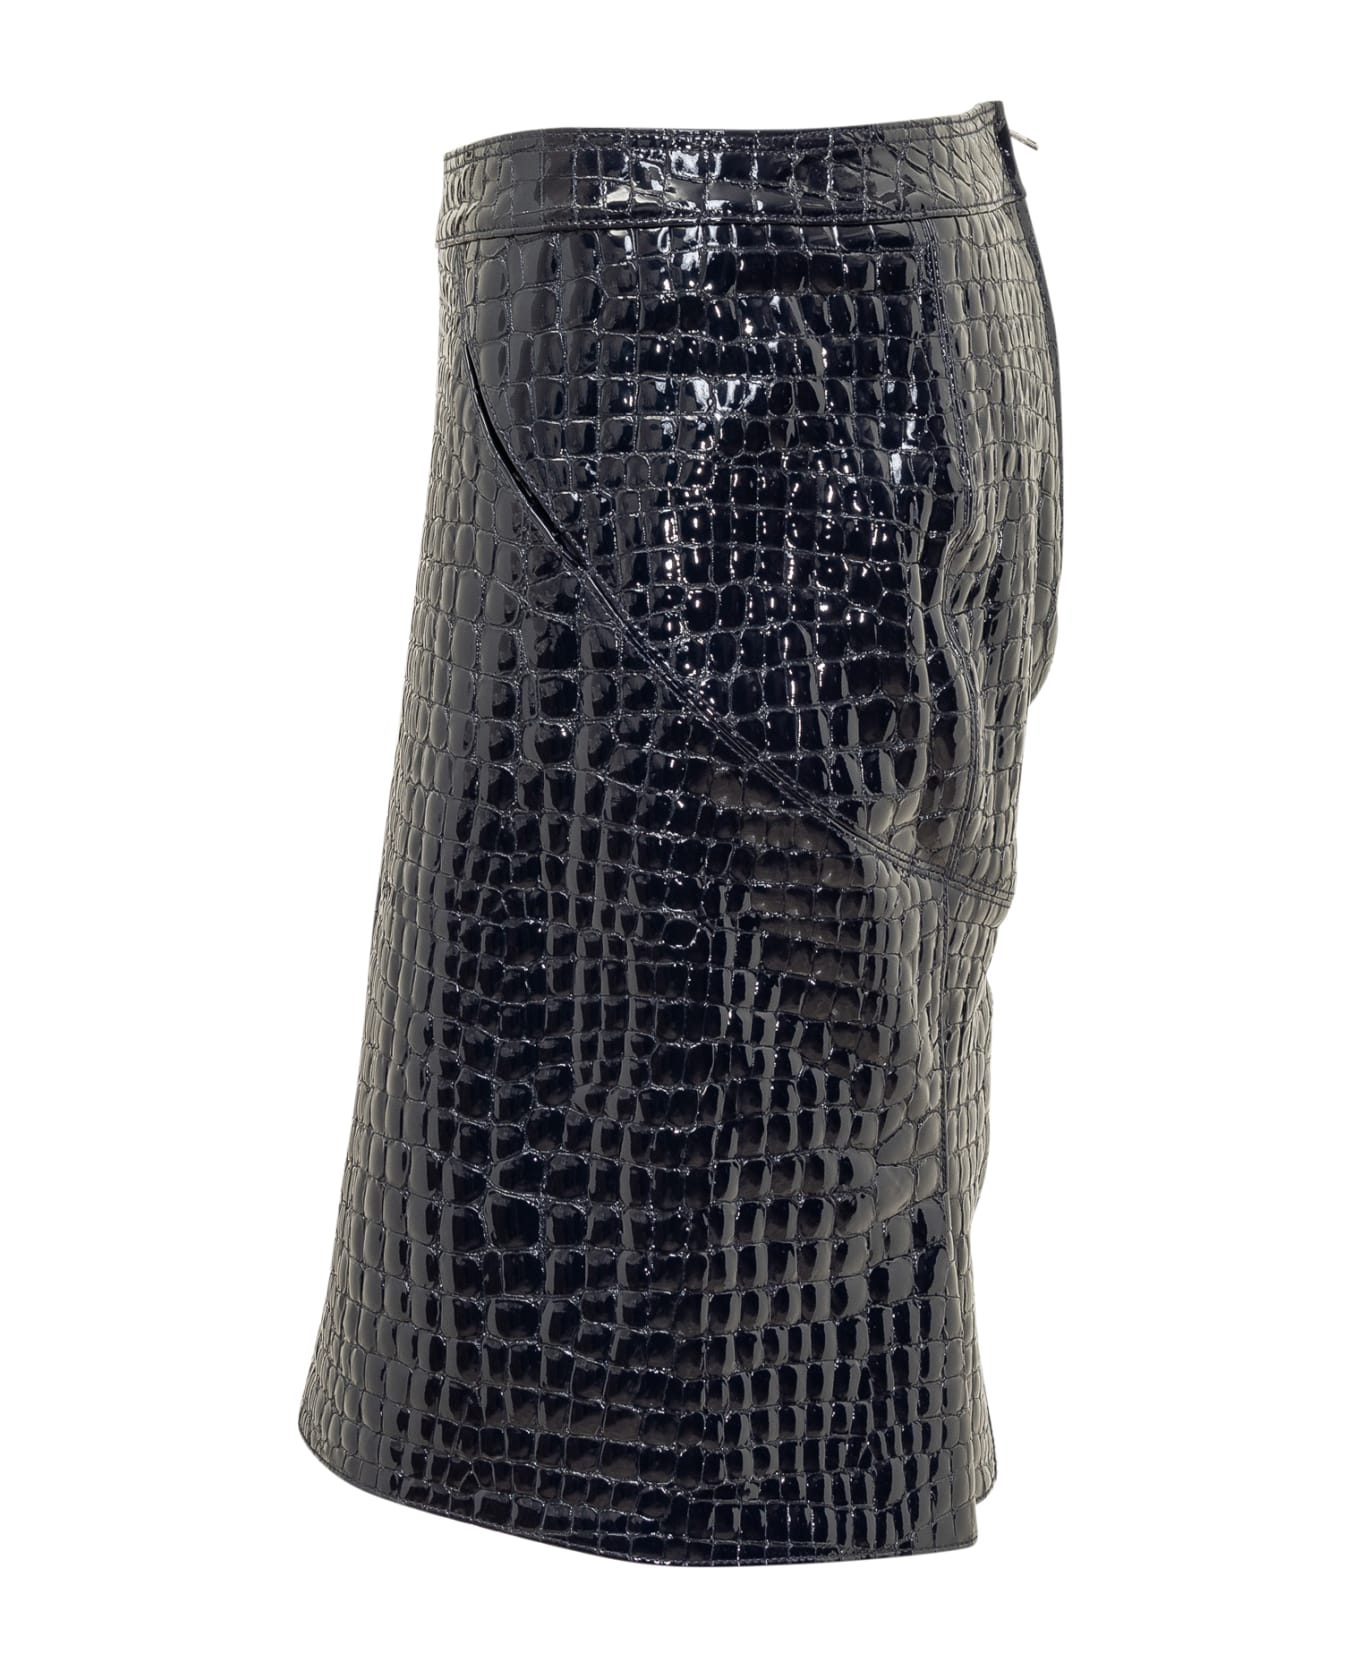 Tom Ford Crocodile-embossed Leather Skirt - DEEP BLUE